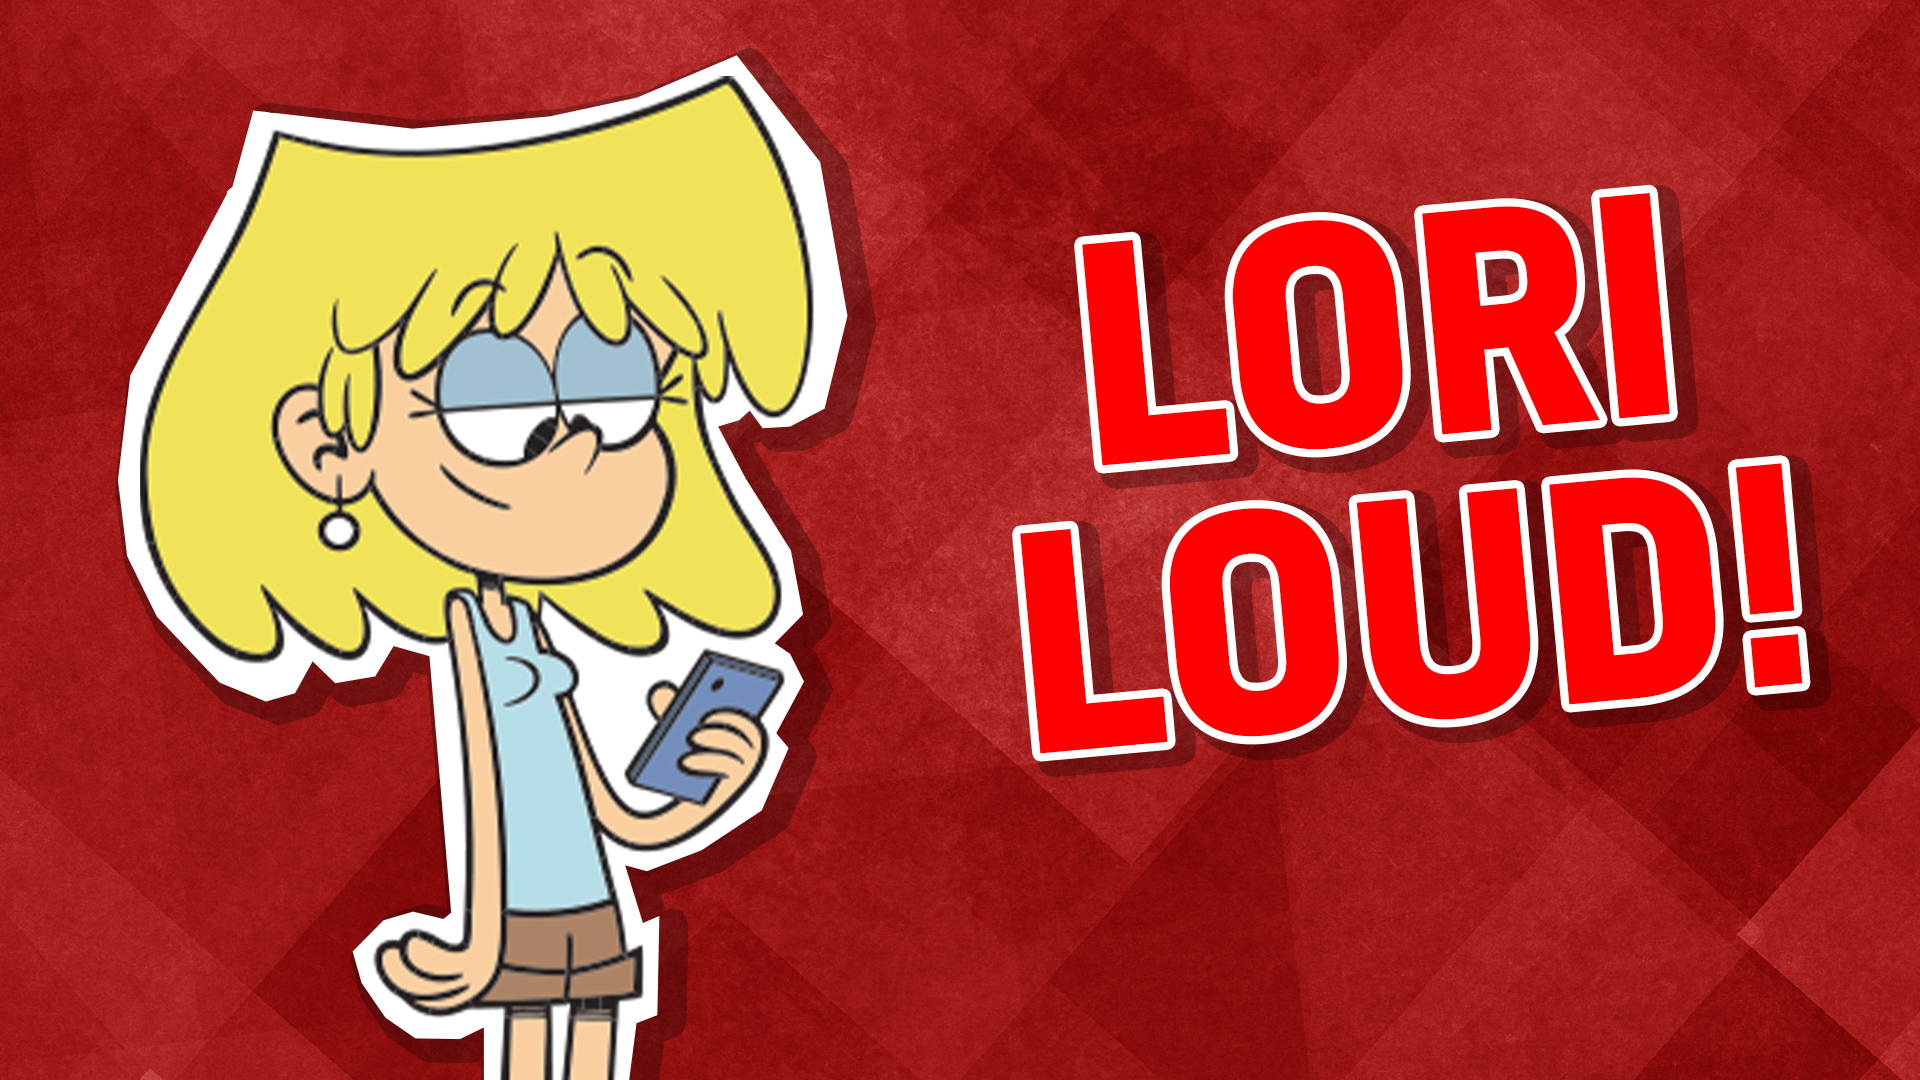 Lori Loud